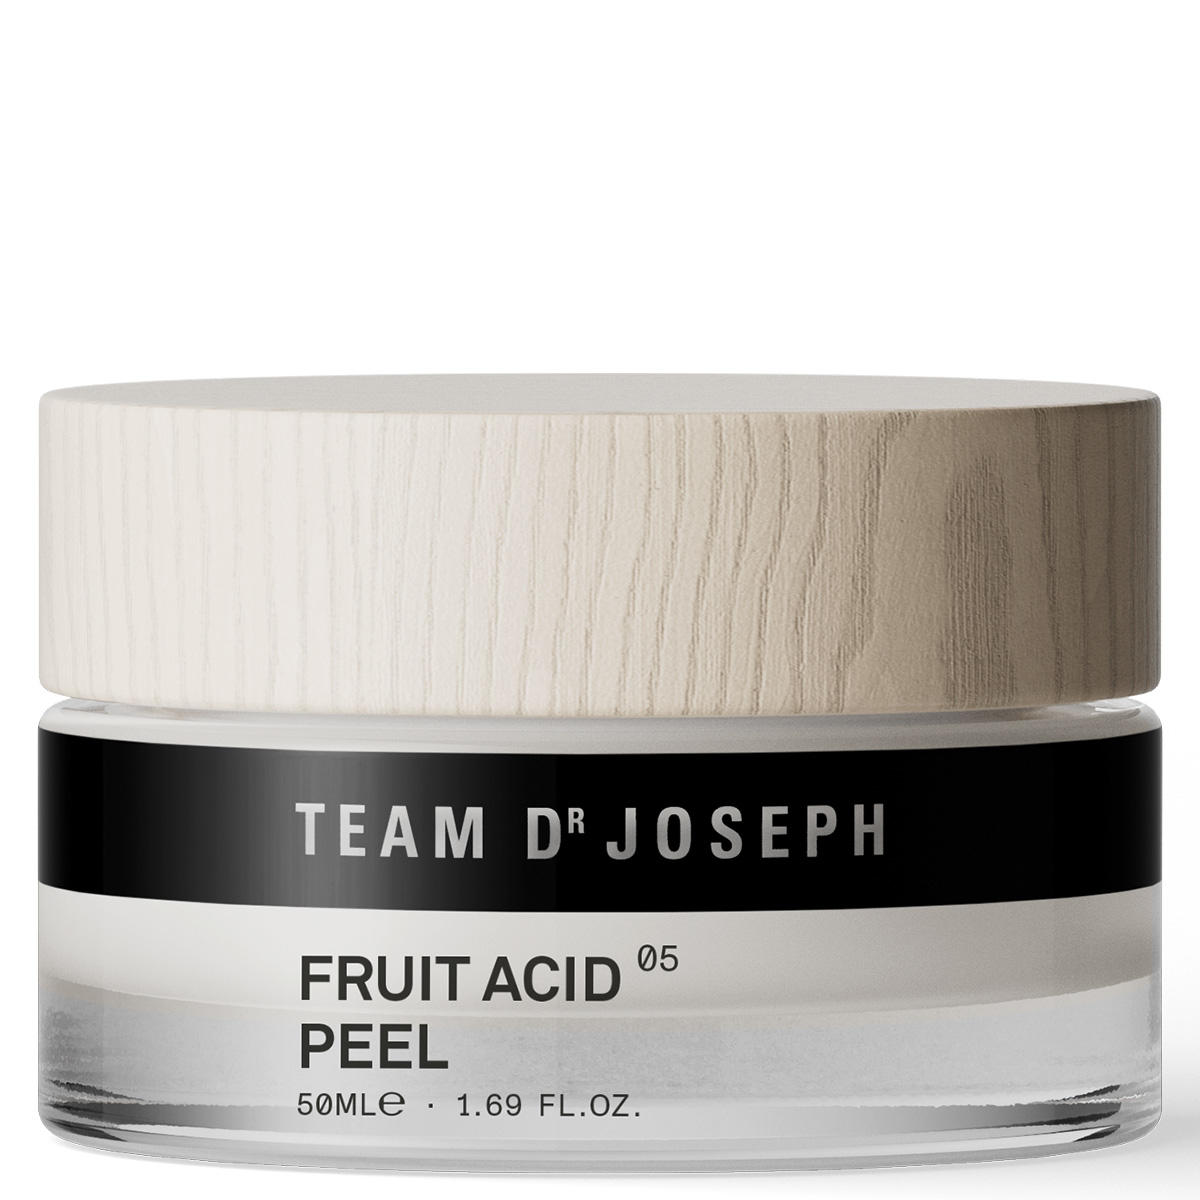 TEAM DR JOSEPH Fruit Acid Peel 50 ml - 1